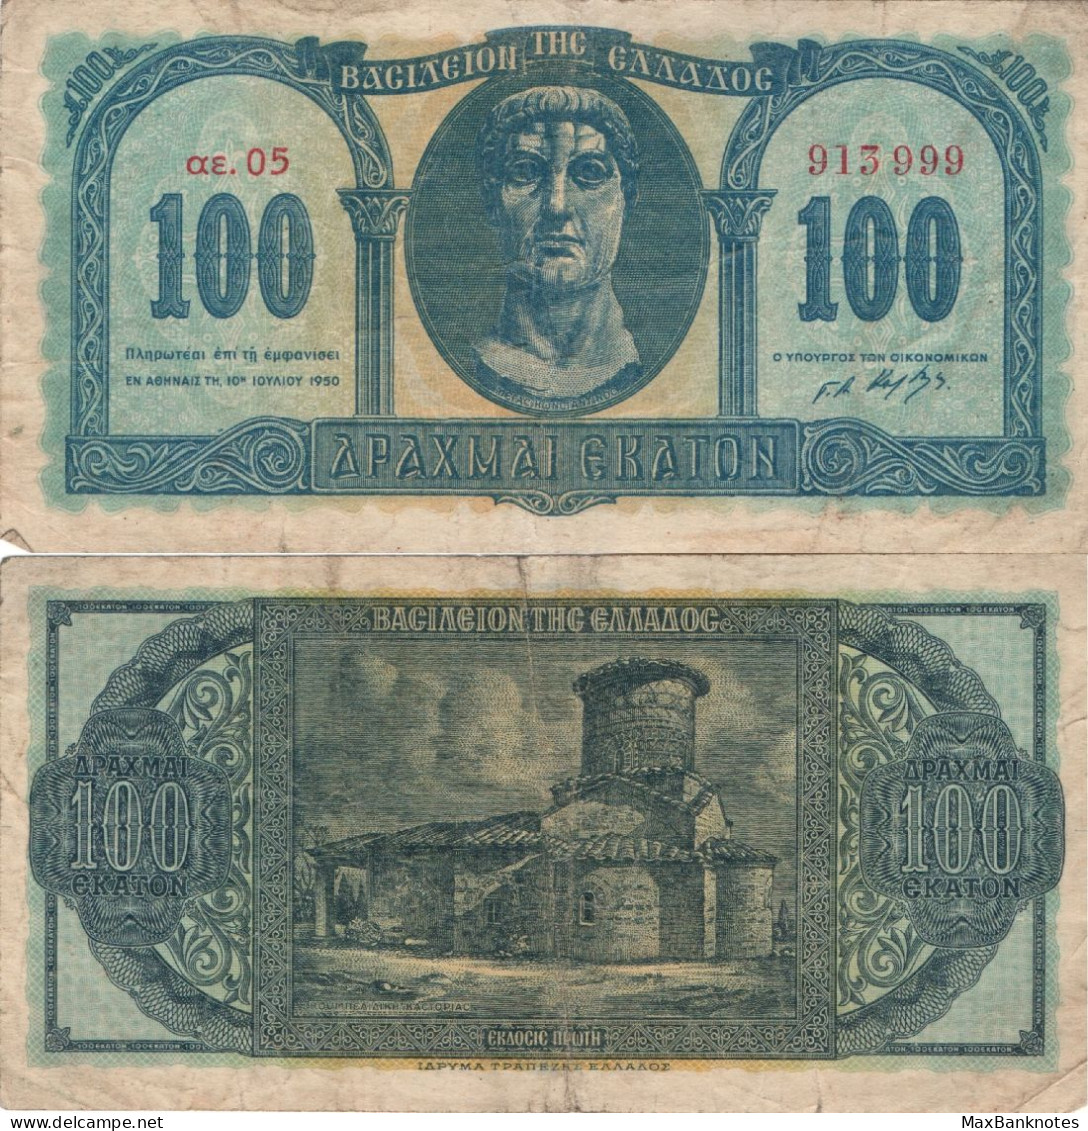 Greece / 100 Drachmai / 1950 / P-324(a) / VF - Griechenland